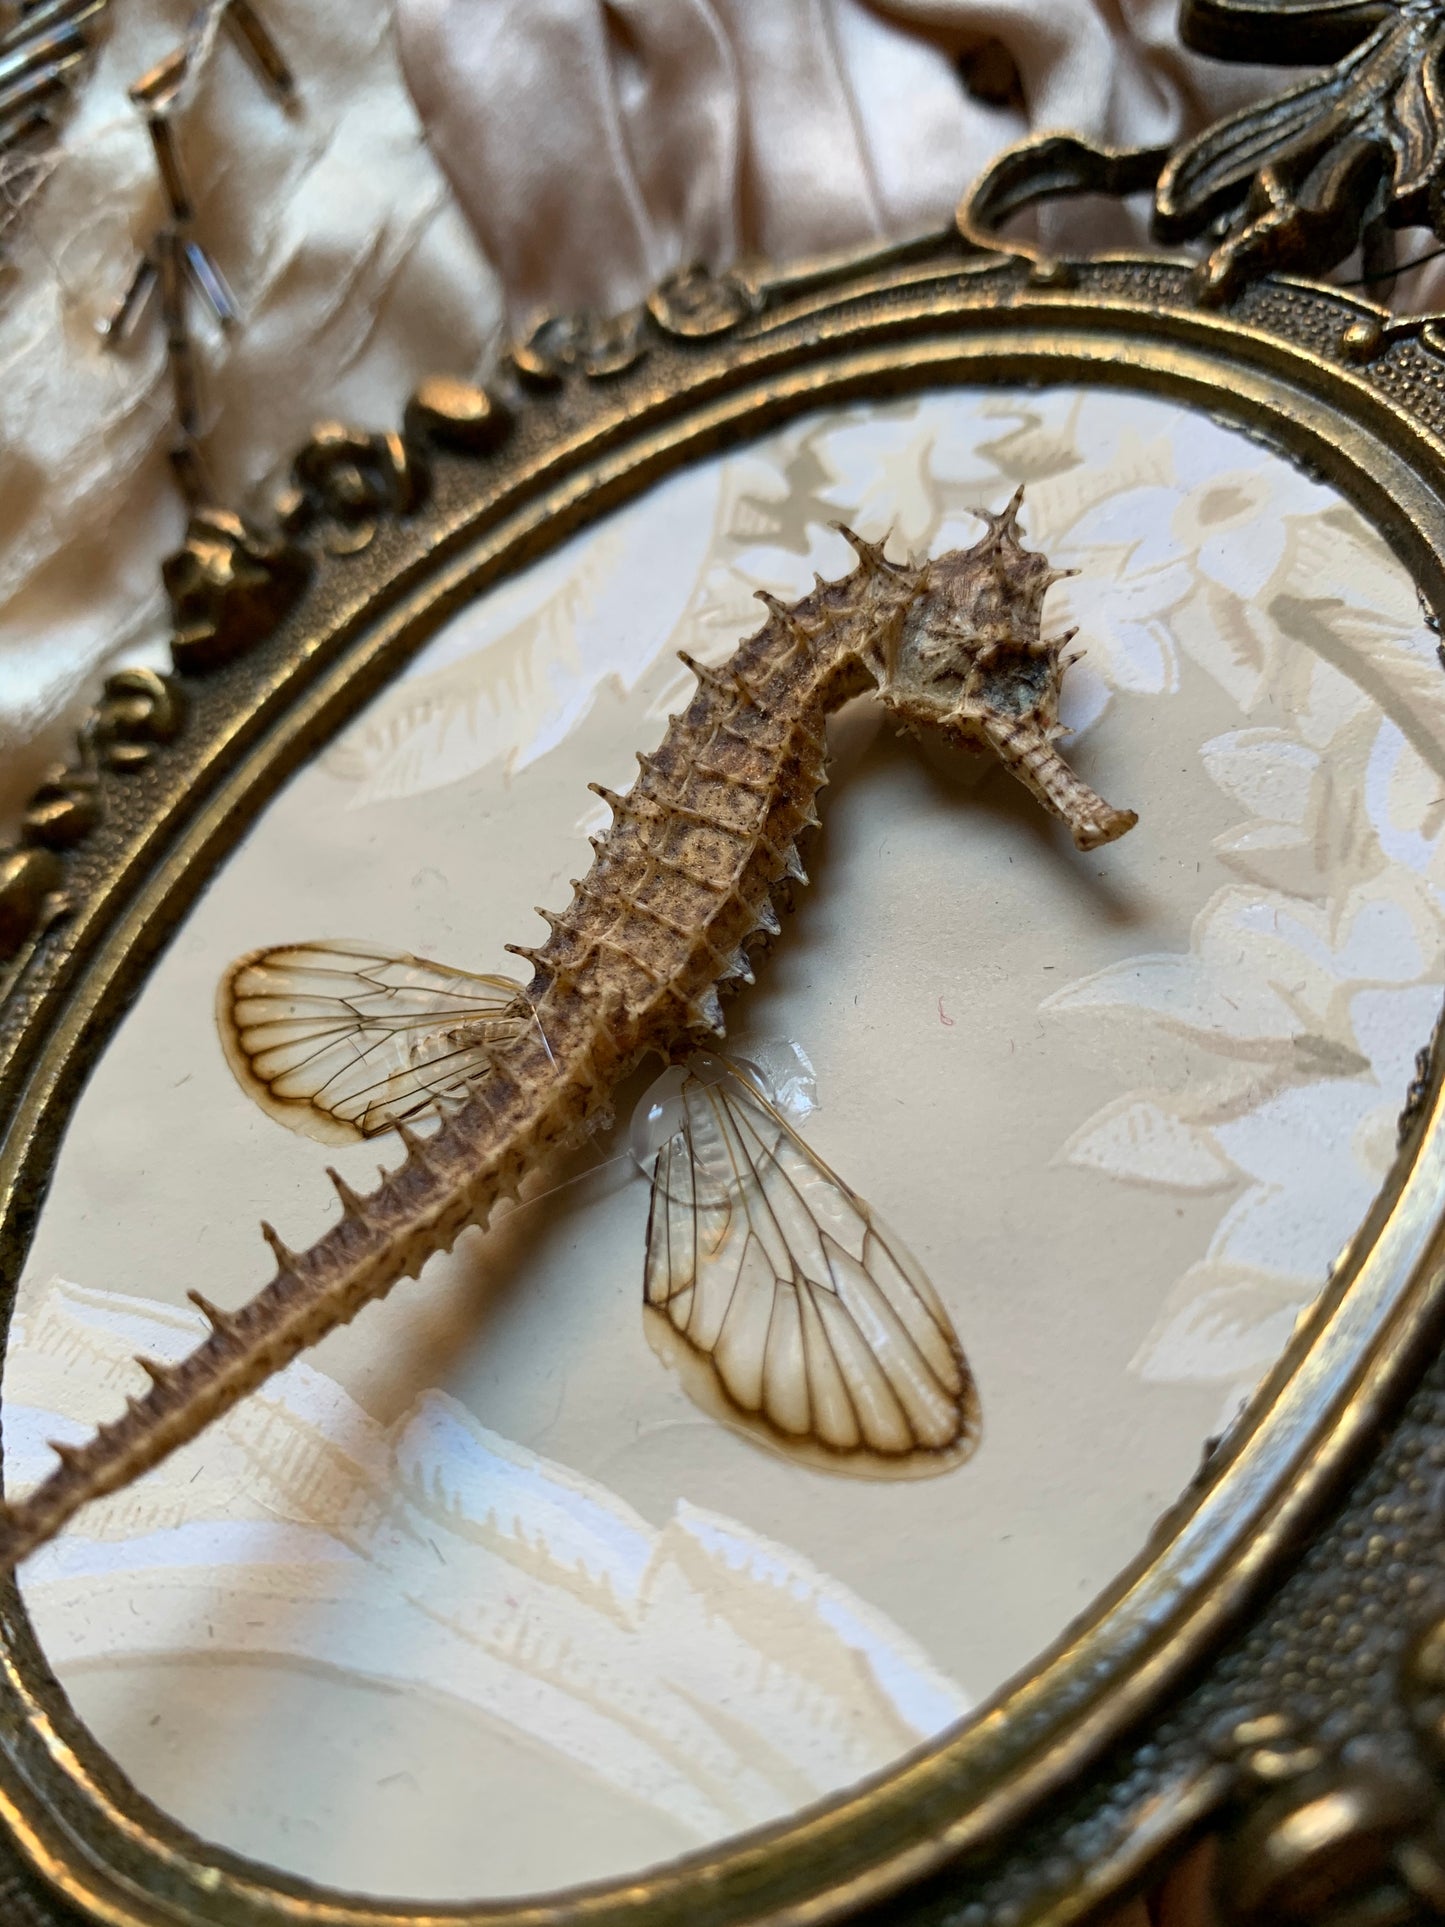 Assembled frame seahorse specimen